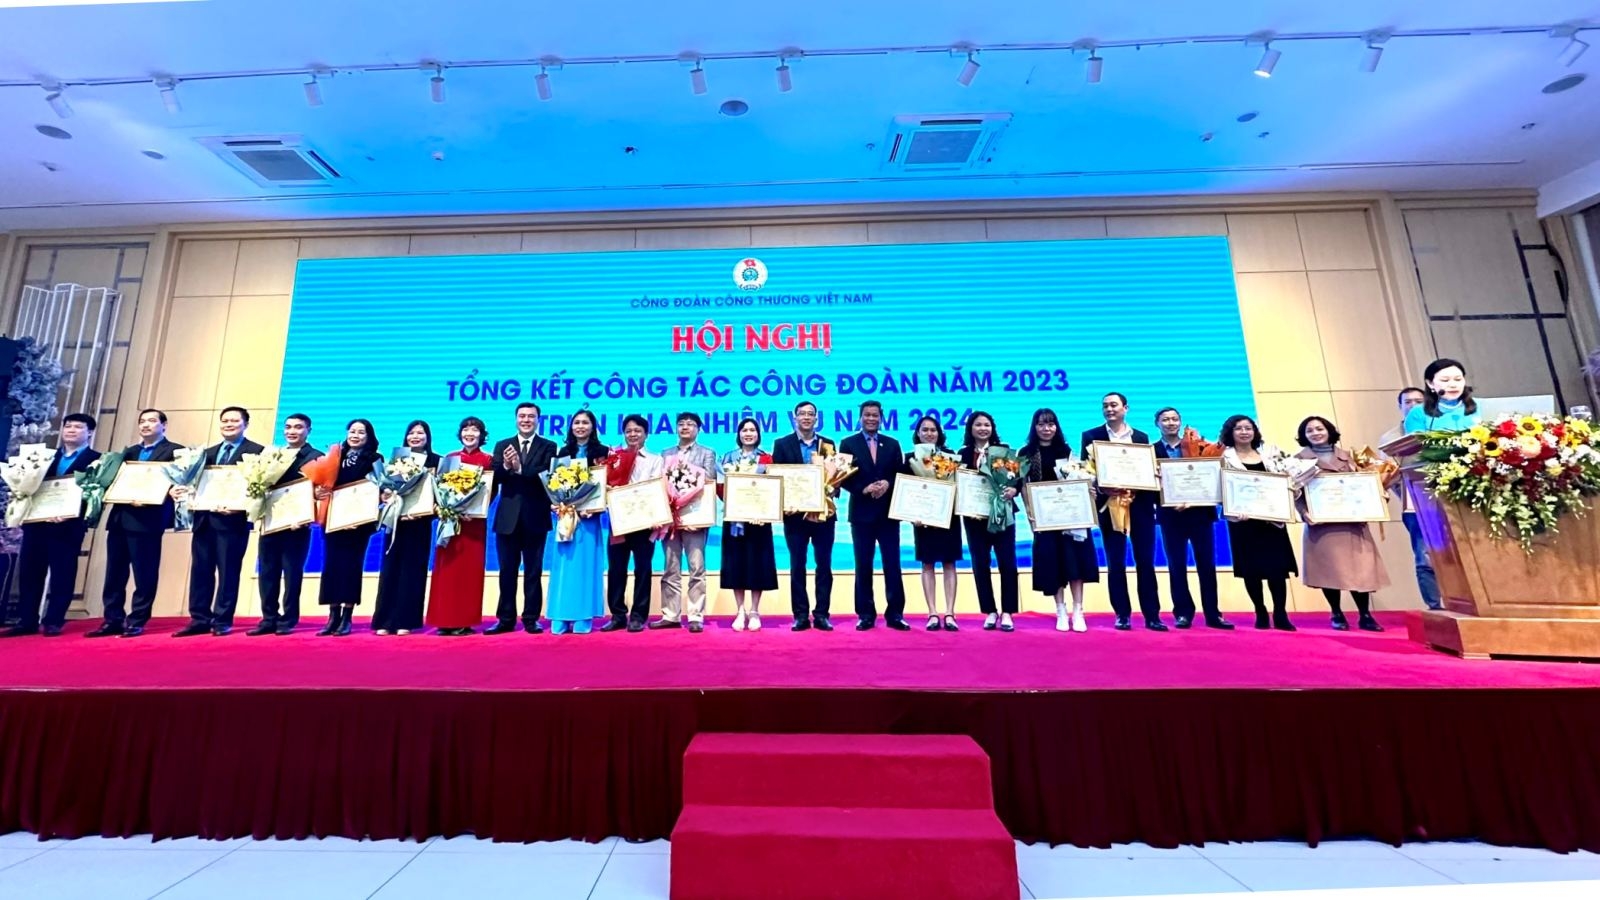 Công đoàn Công Thương Việt Nam: Tổng kết công tác công đoàn năm 2023, triển khai nhiệm vụ năm 2024